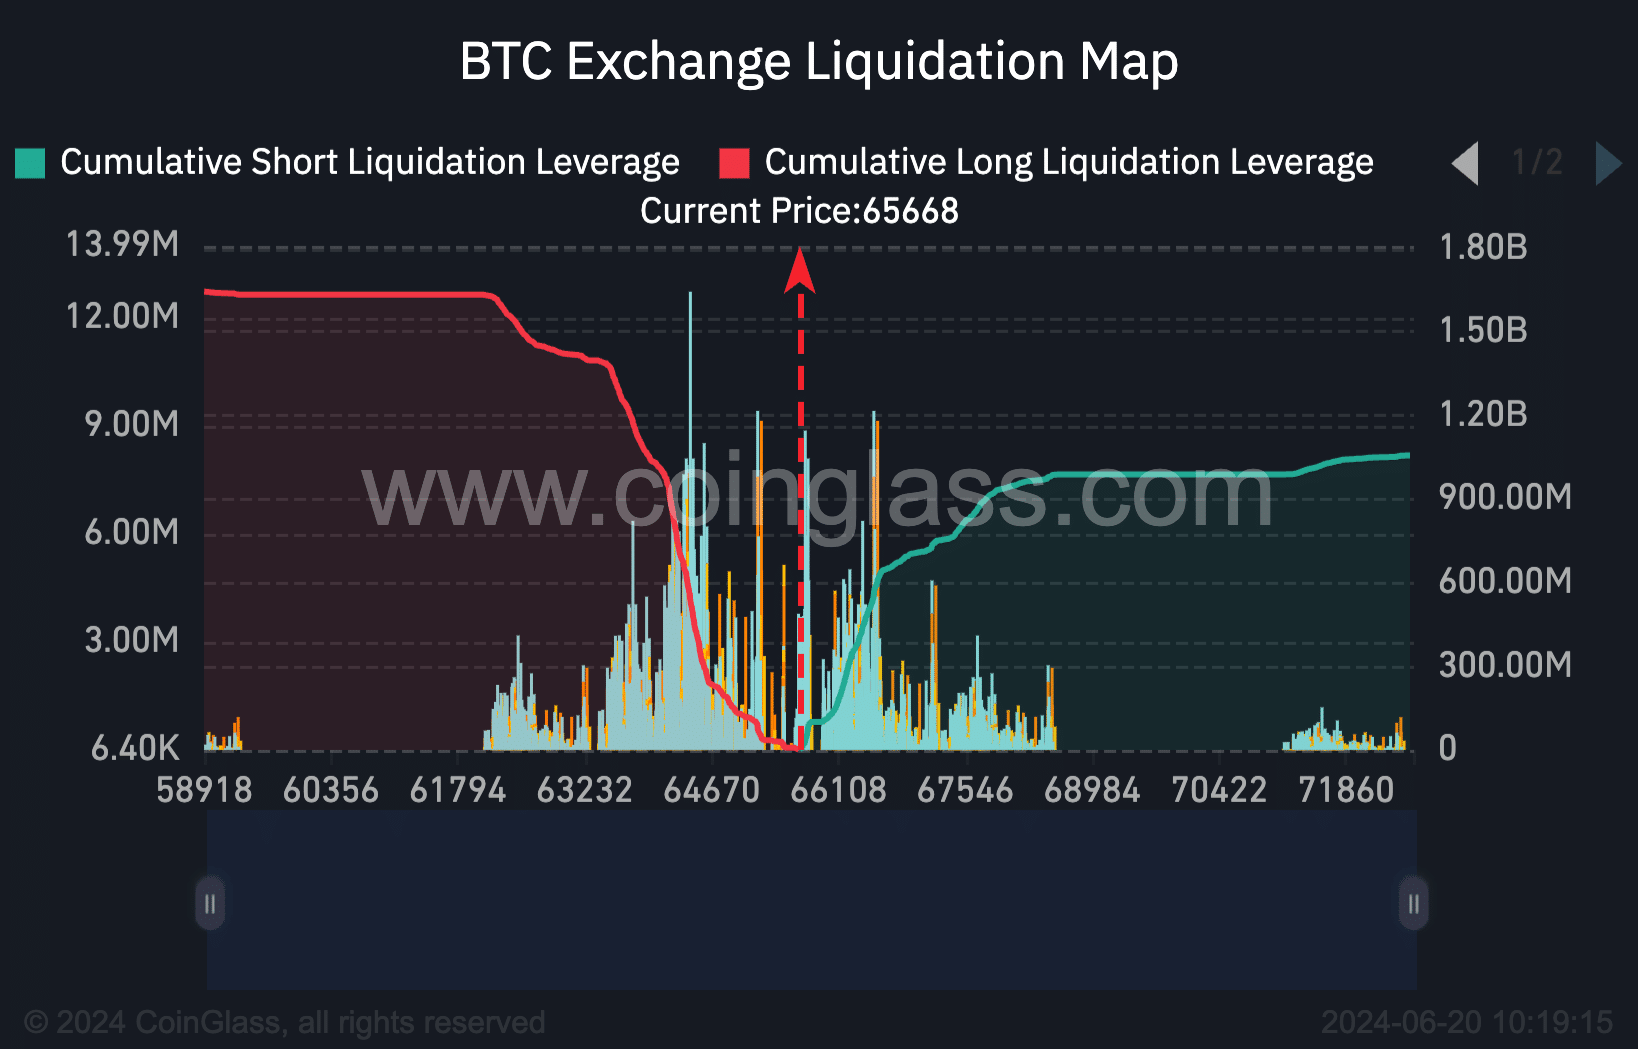 Liquidation of Bitcoin exchanges